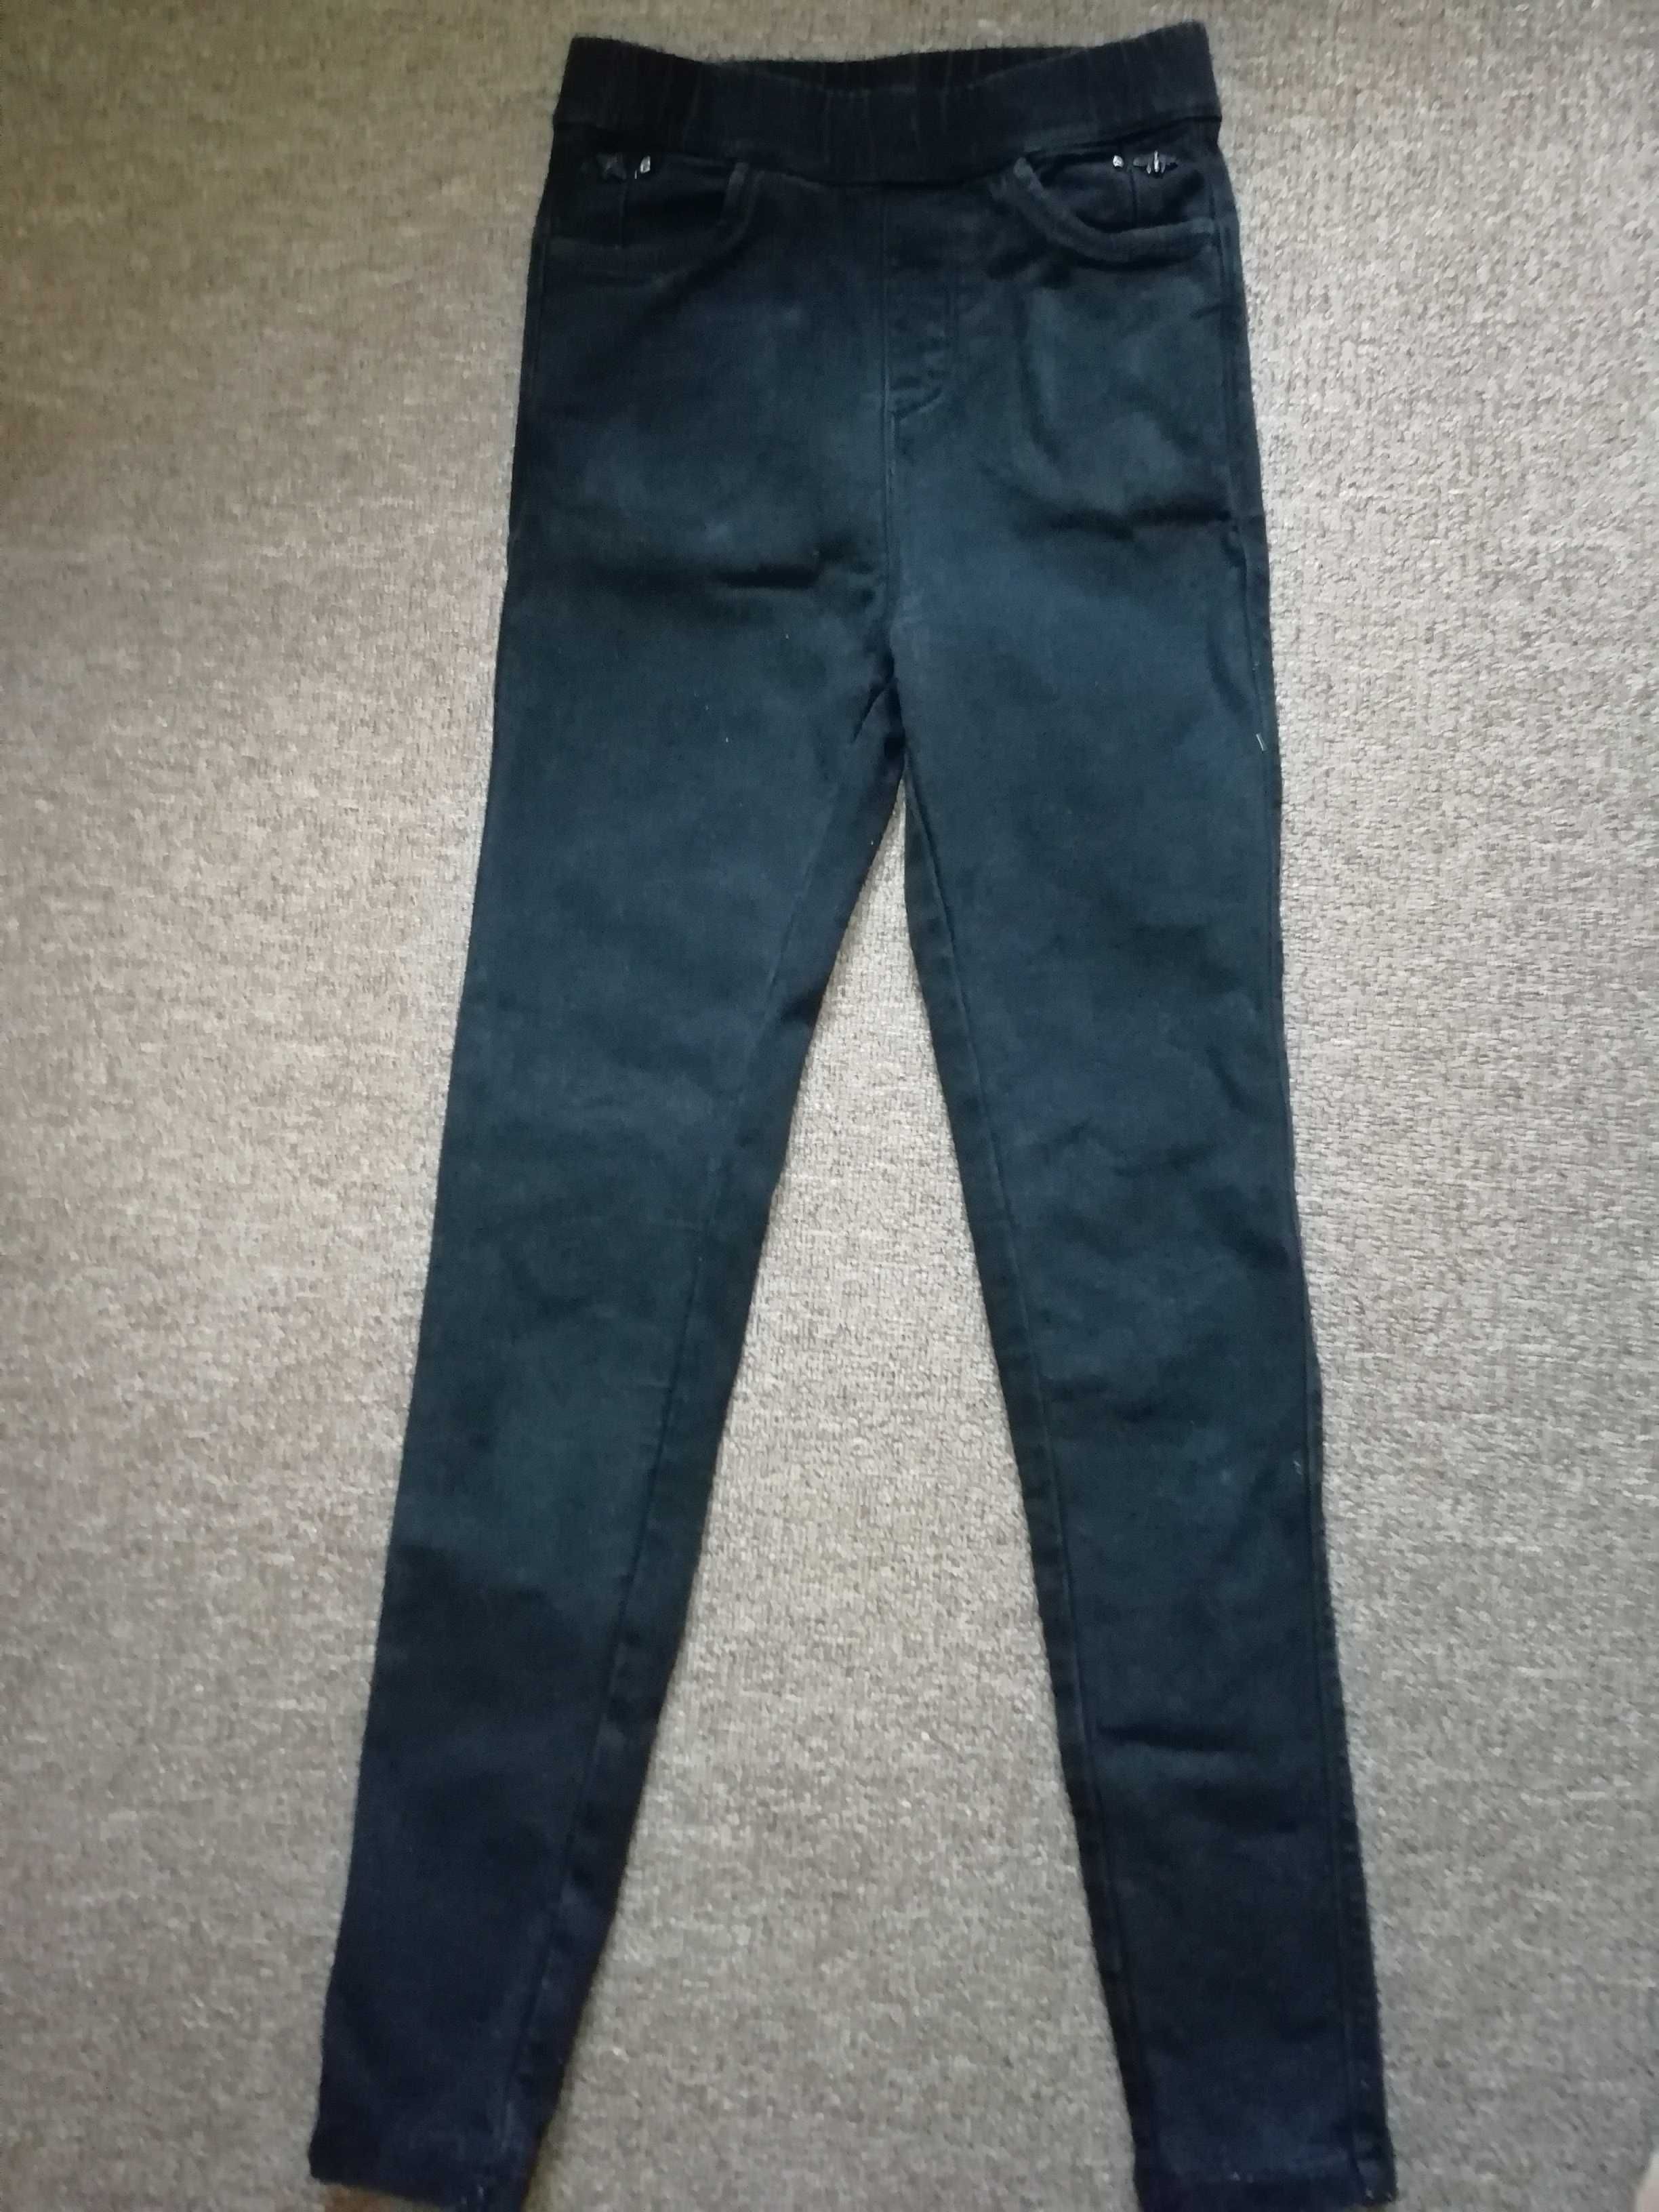 Продам штаны, джинсы на худенькую девочку р. 146-152.